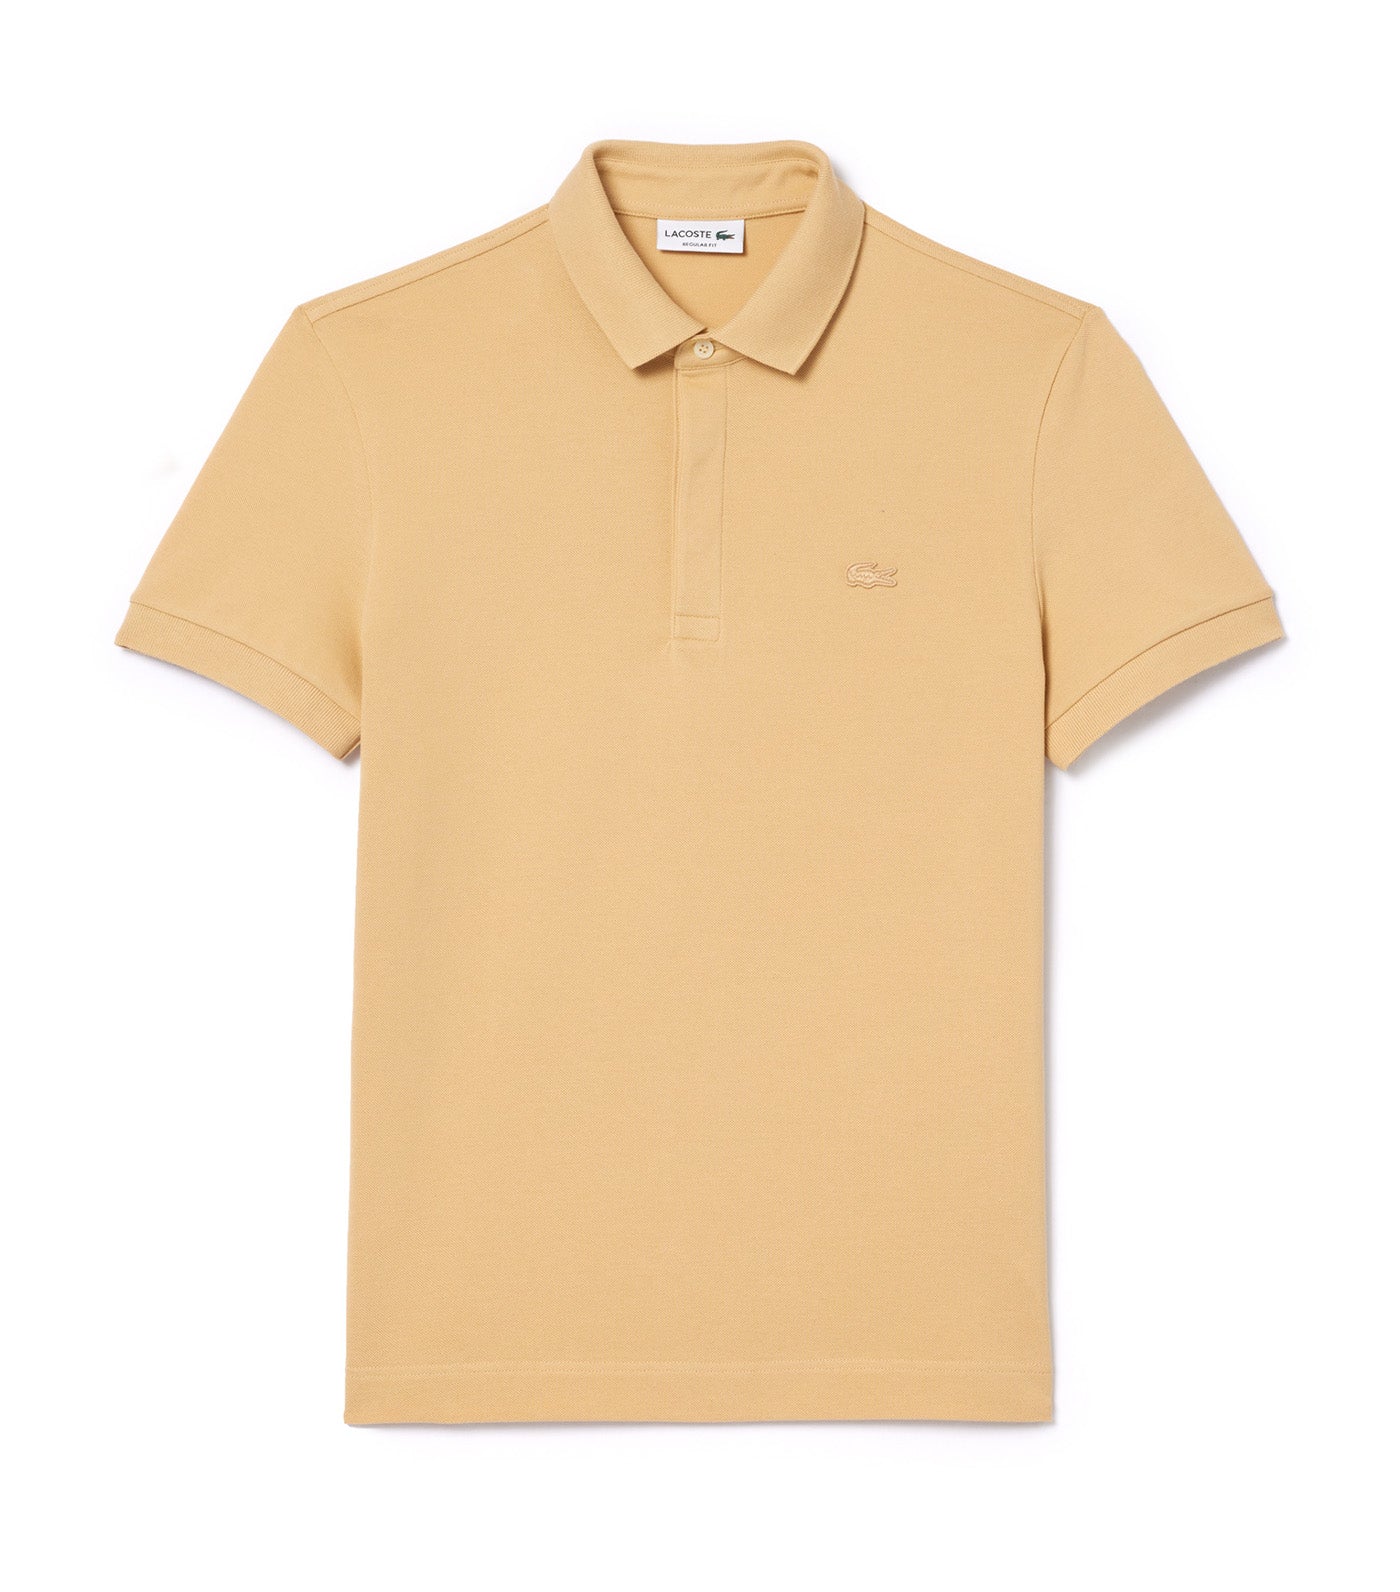 Men's Lacoste Paris Polo Shirt Regular Fit Stretch Cotton Piqué Croissant